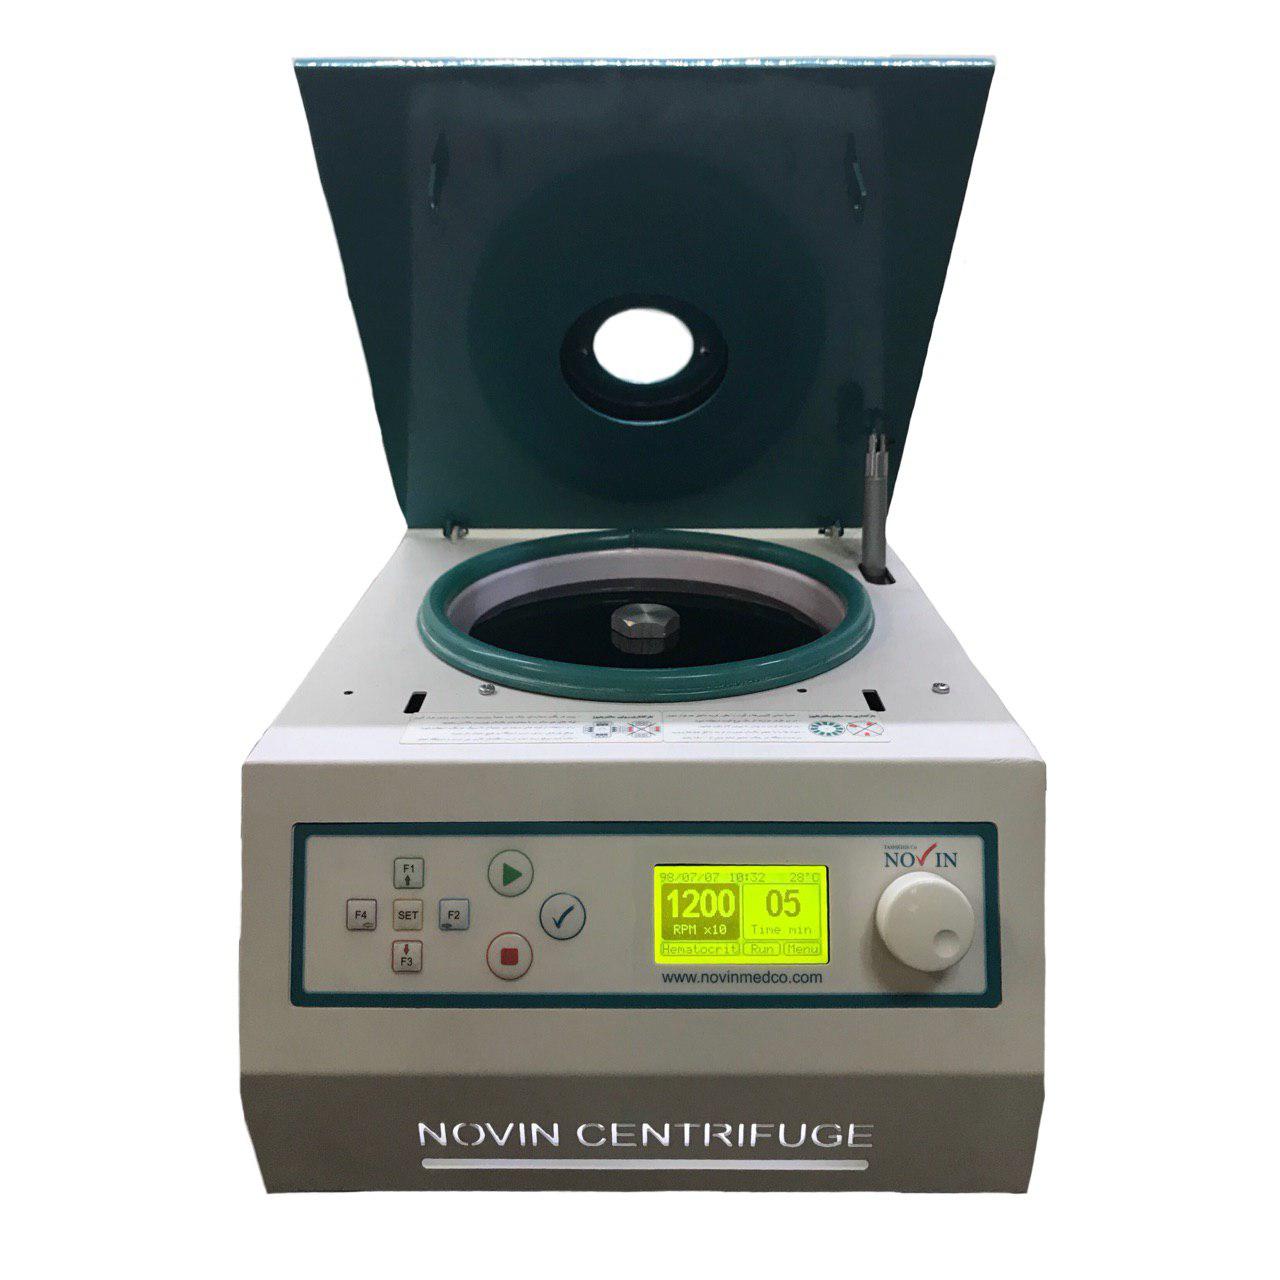 سانتریفیوژ هماتوکریت - centrifuge hematocrit - نوین تشخیص - دستگاه - دستگاه ها و ملزومات آزمایشگاهی - نوین تشخیص فراهان